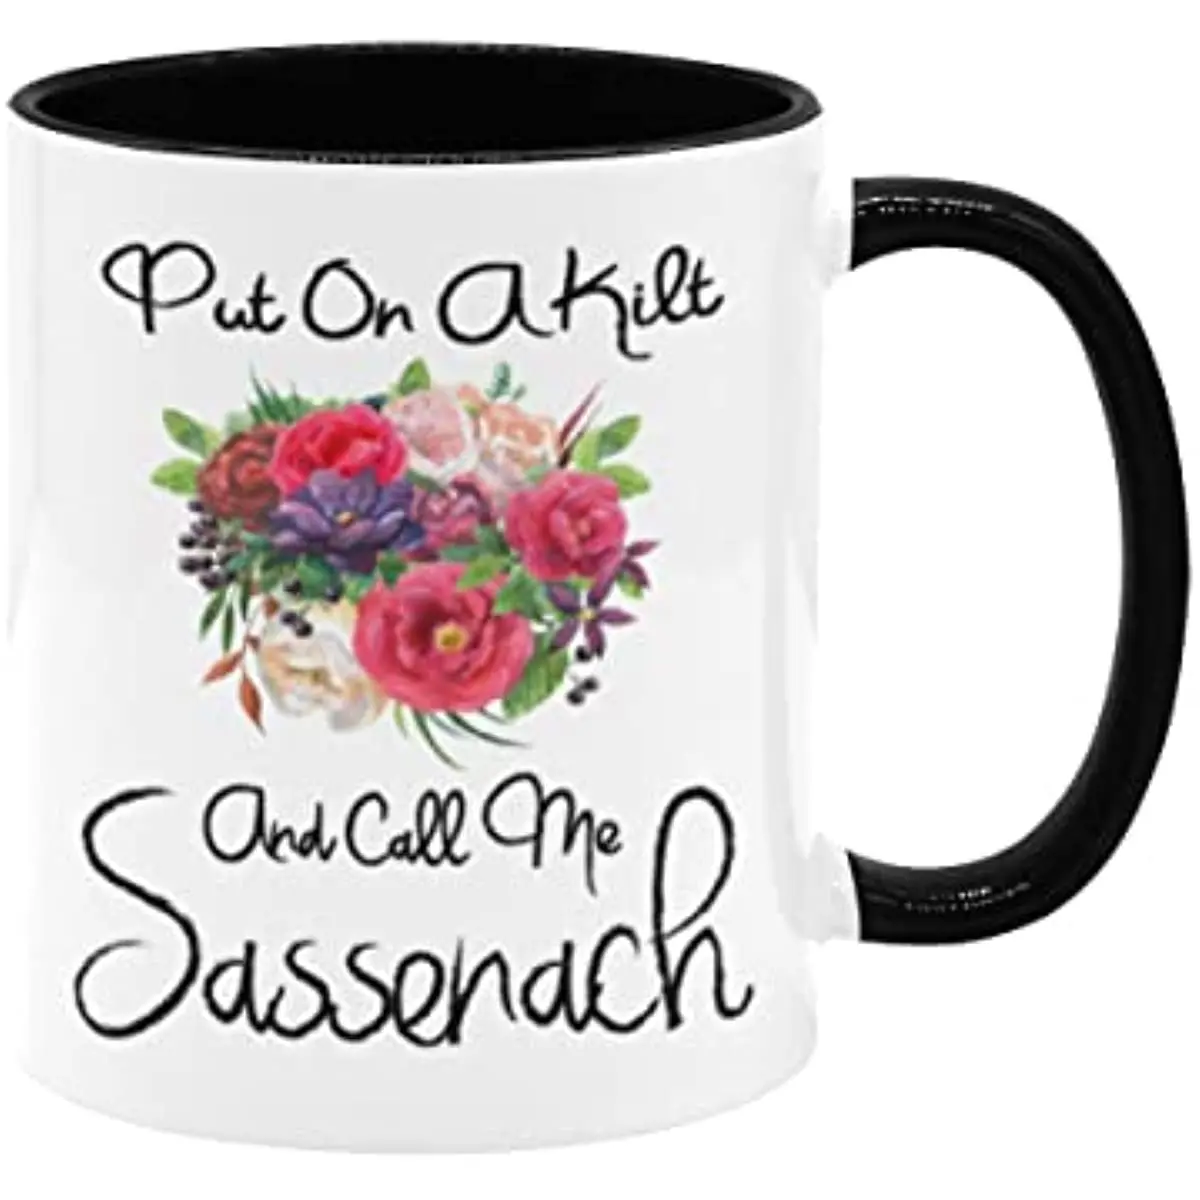 

Funny Naughty Mug Put On A Kilt And Call Me Sassenach Mug Funny Mug Highlander Coffee Mug Scottish Mug Ceramic Coffee Cup